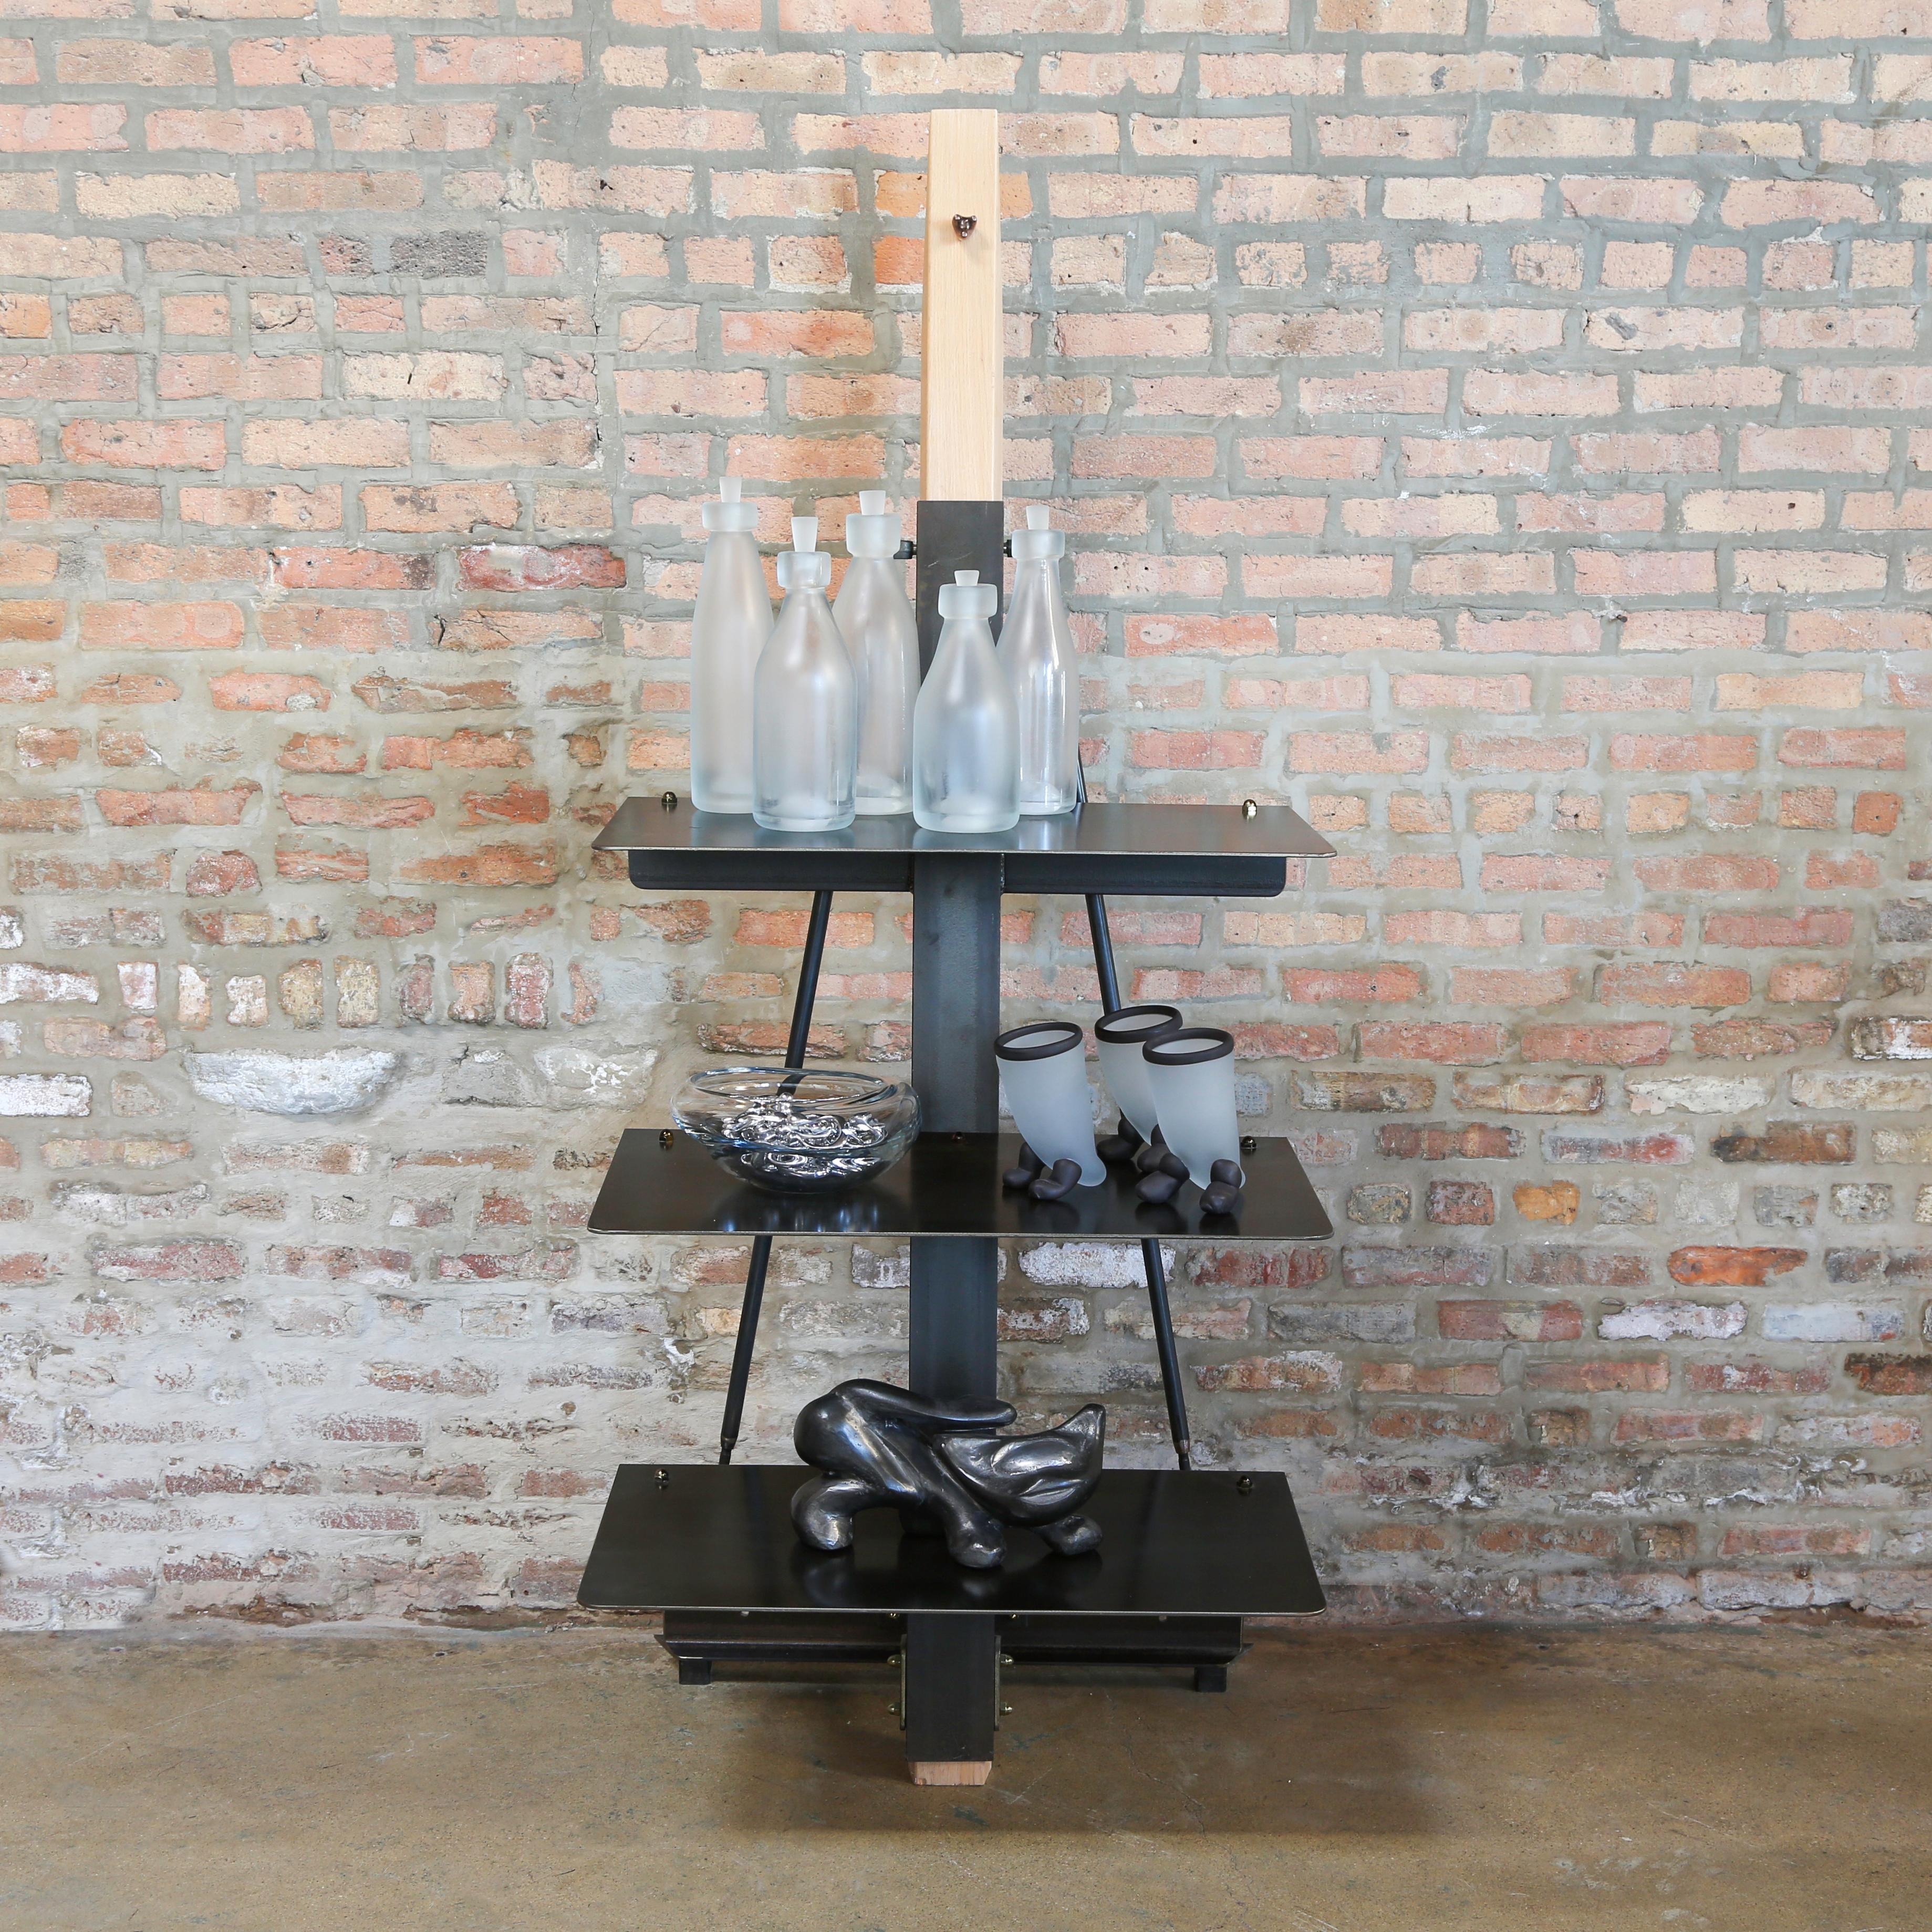 Industrial romantic étagère; steel shelves and white oak, Jordan Mozer, USA, 2013

Measures: 30